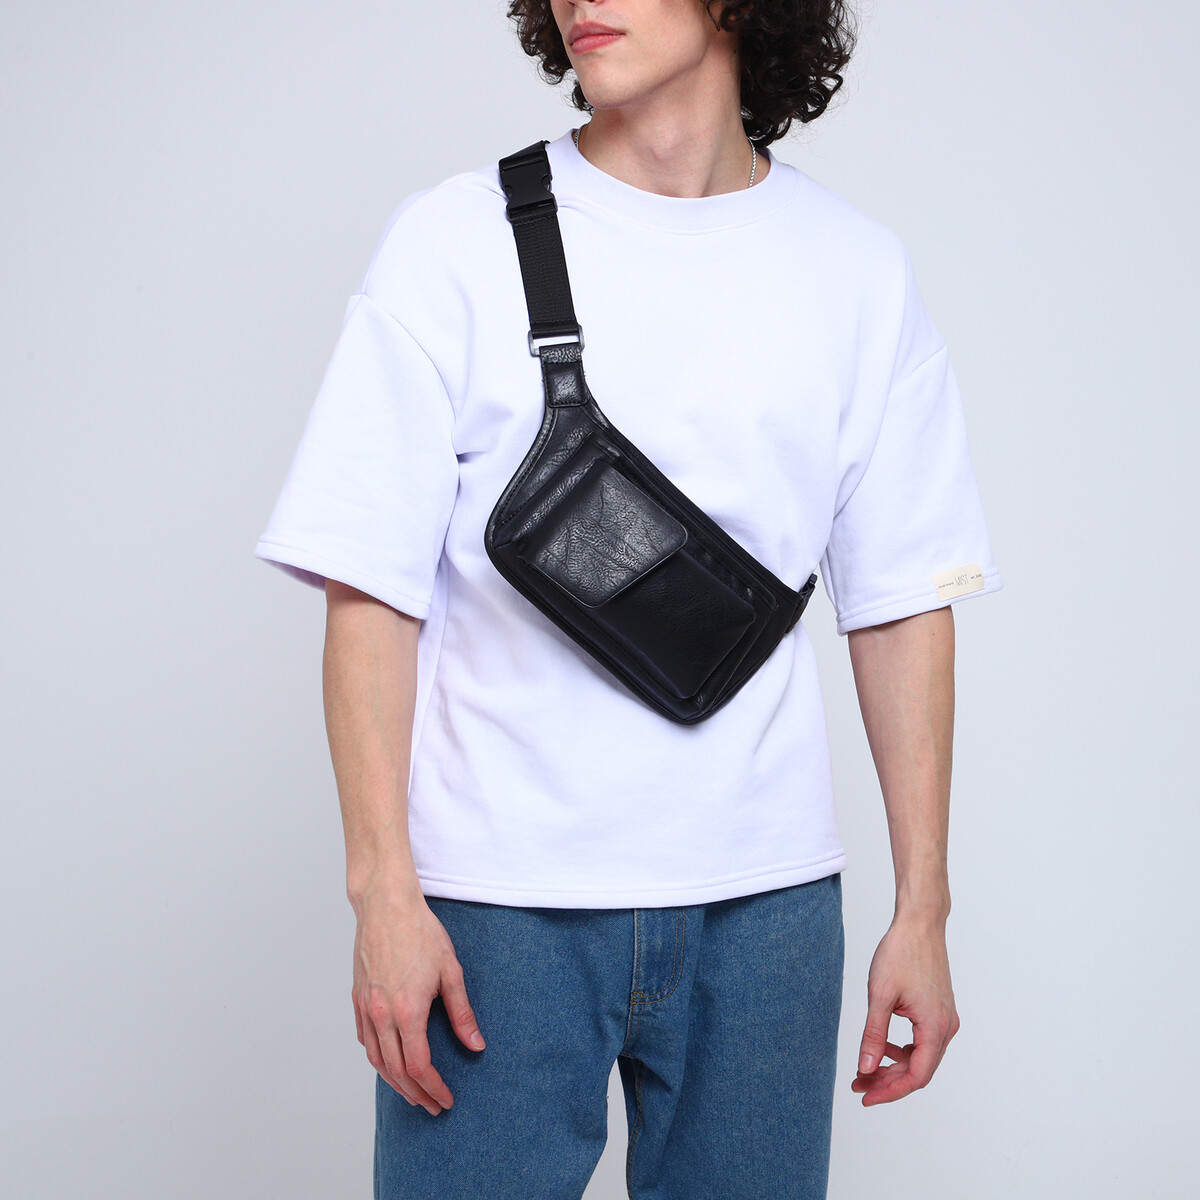 Поясная сумка на молнии, 3 наружных кармана, цвет черный поясная сумка на молнии 3 наружных кармана зацеп на бедро